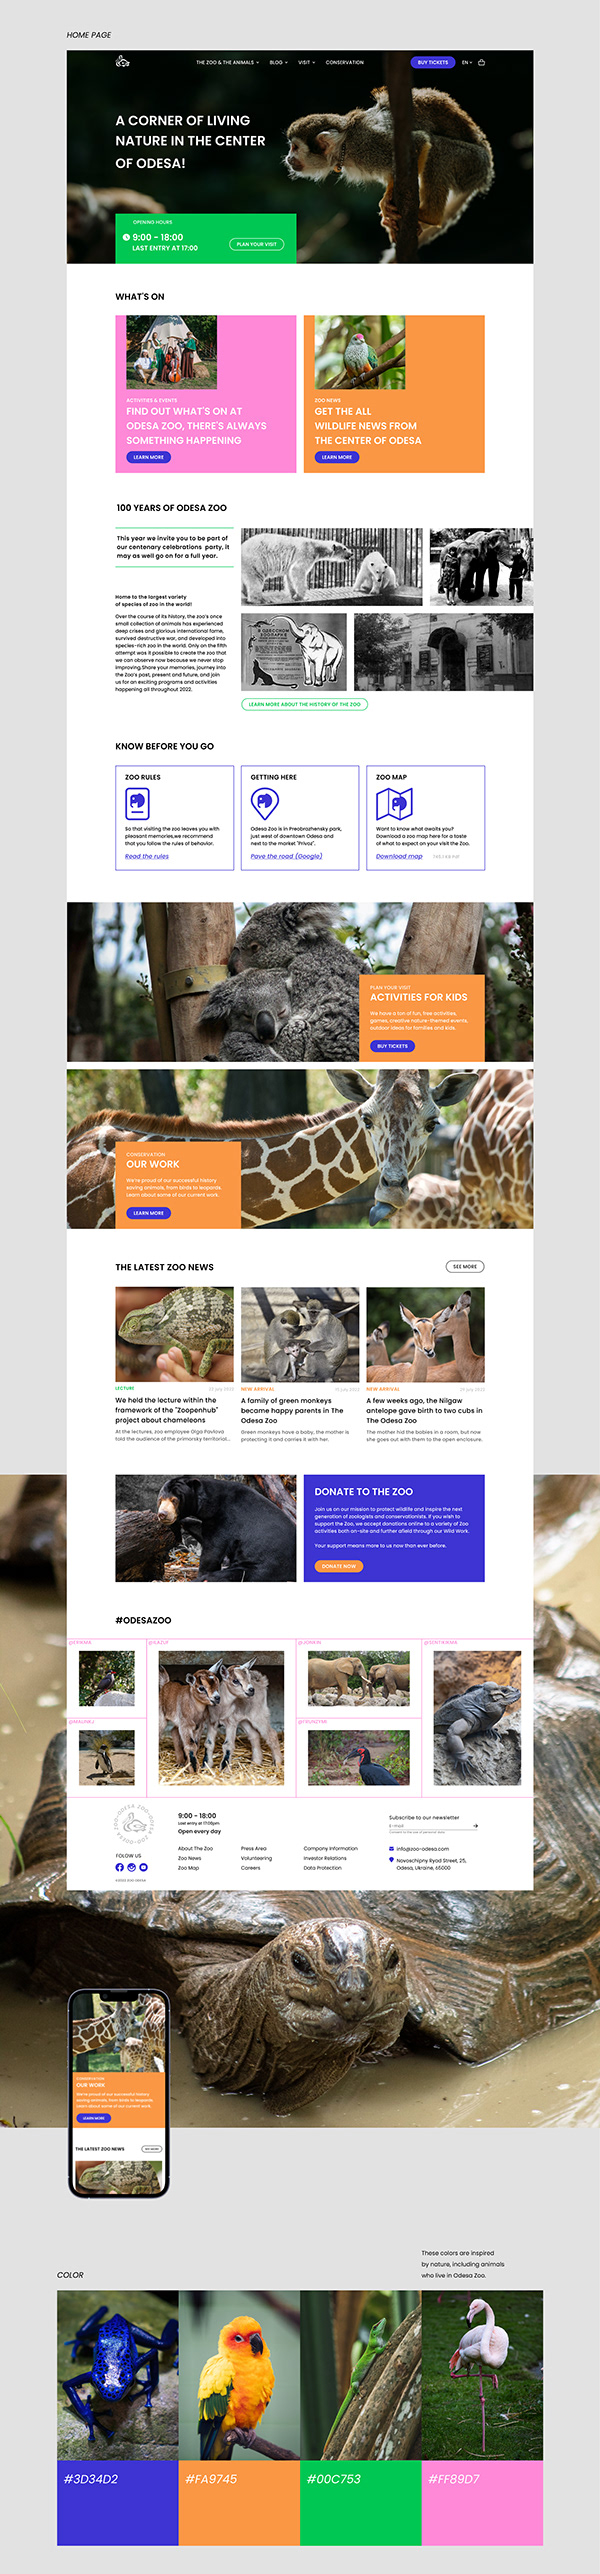 Odesa Zoo | Redesign concept